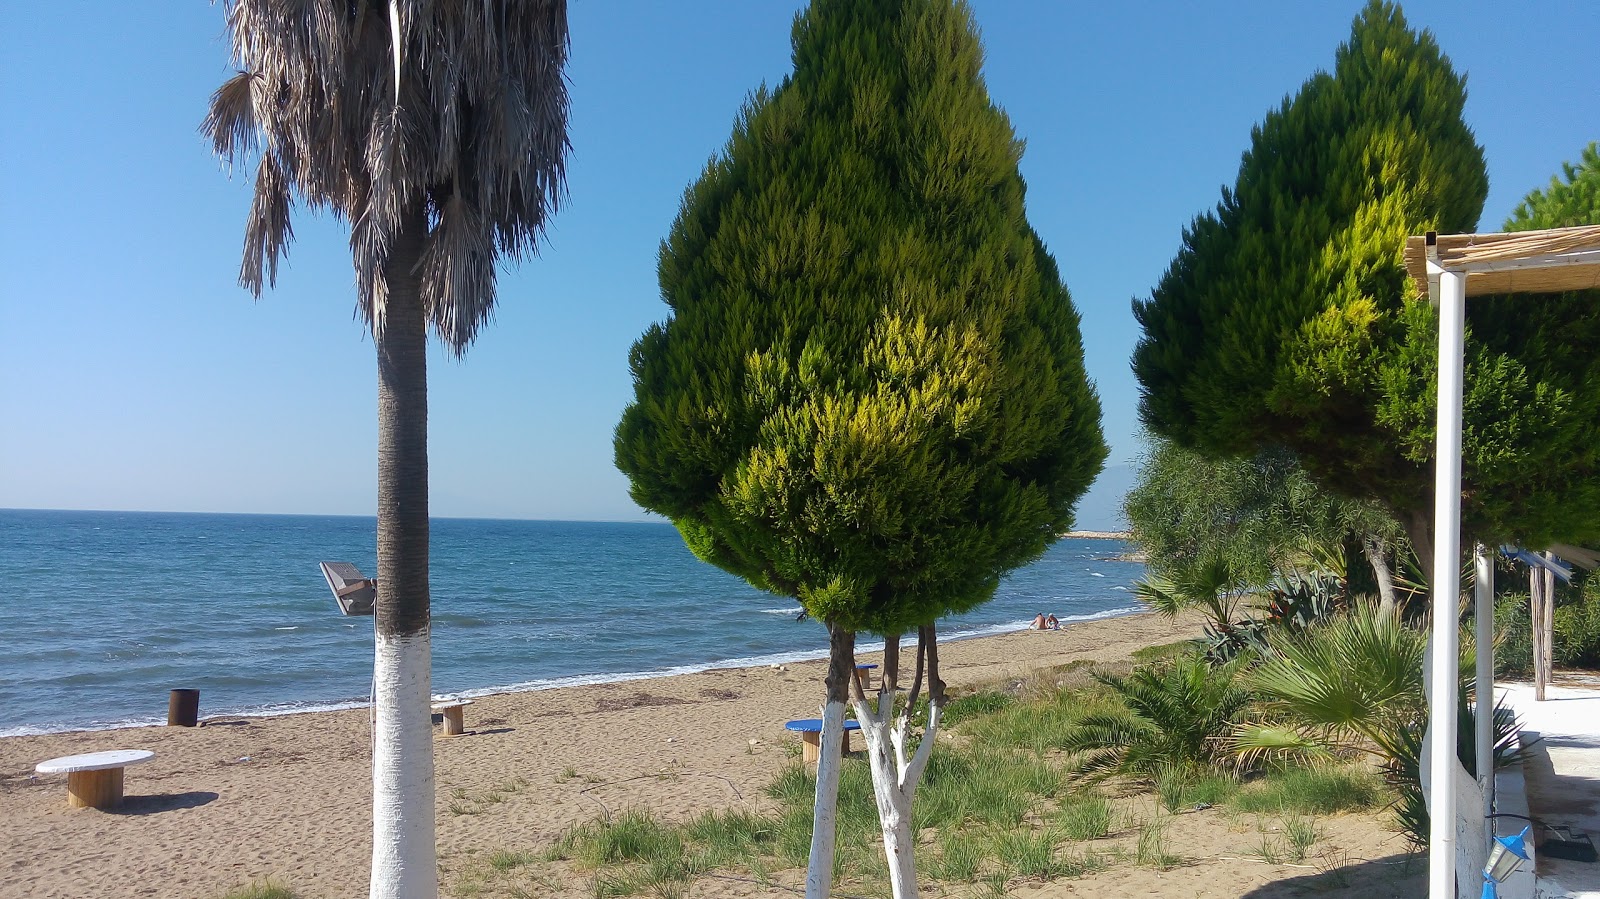 Fotografie cu Gulbahce beach IV cu o suprafață de apă albastră închisă